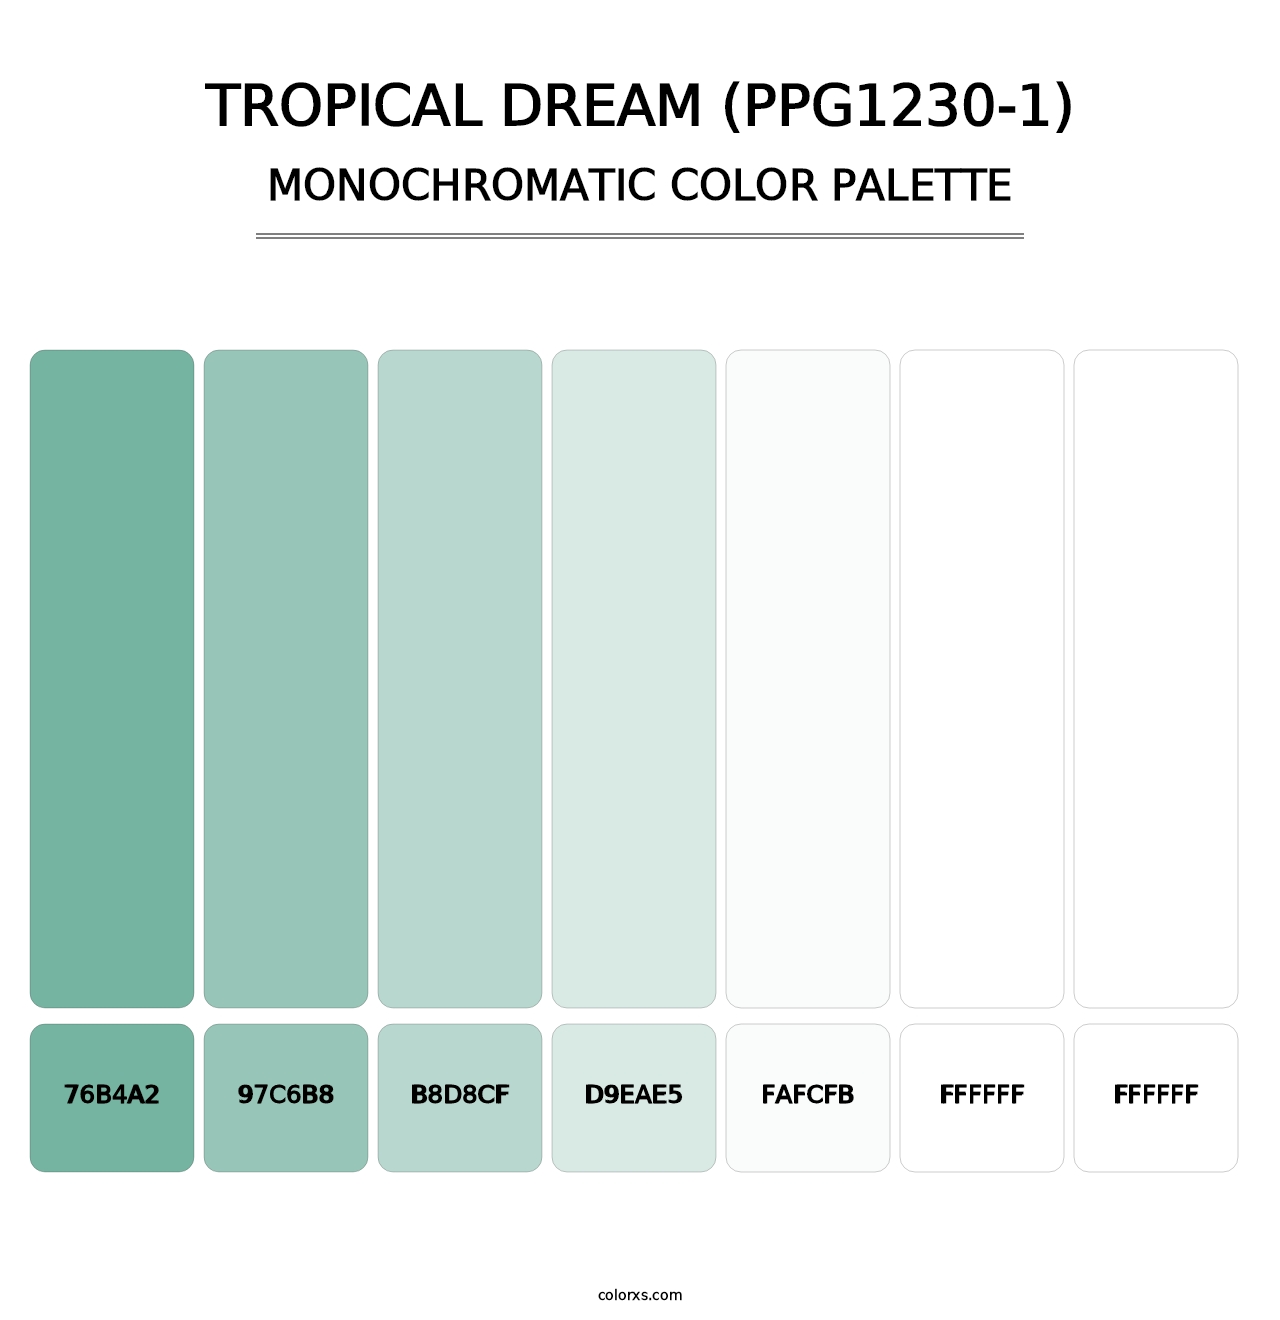 Tropical Dream (PPG1230-1) - Monochromatic Color Palette